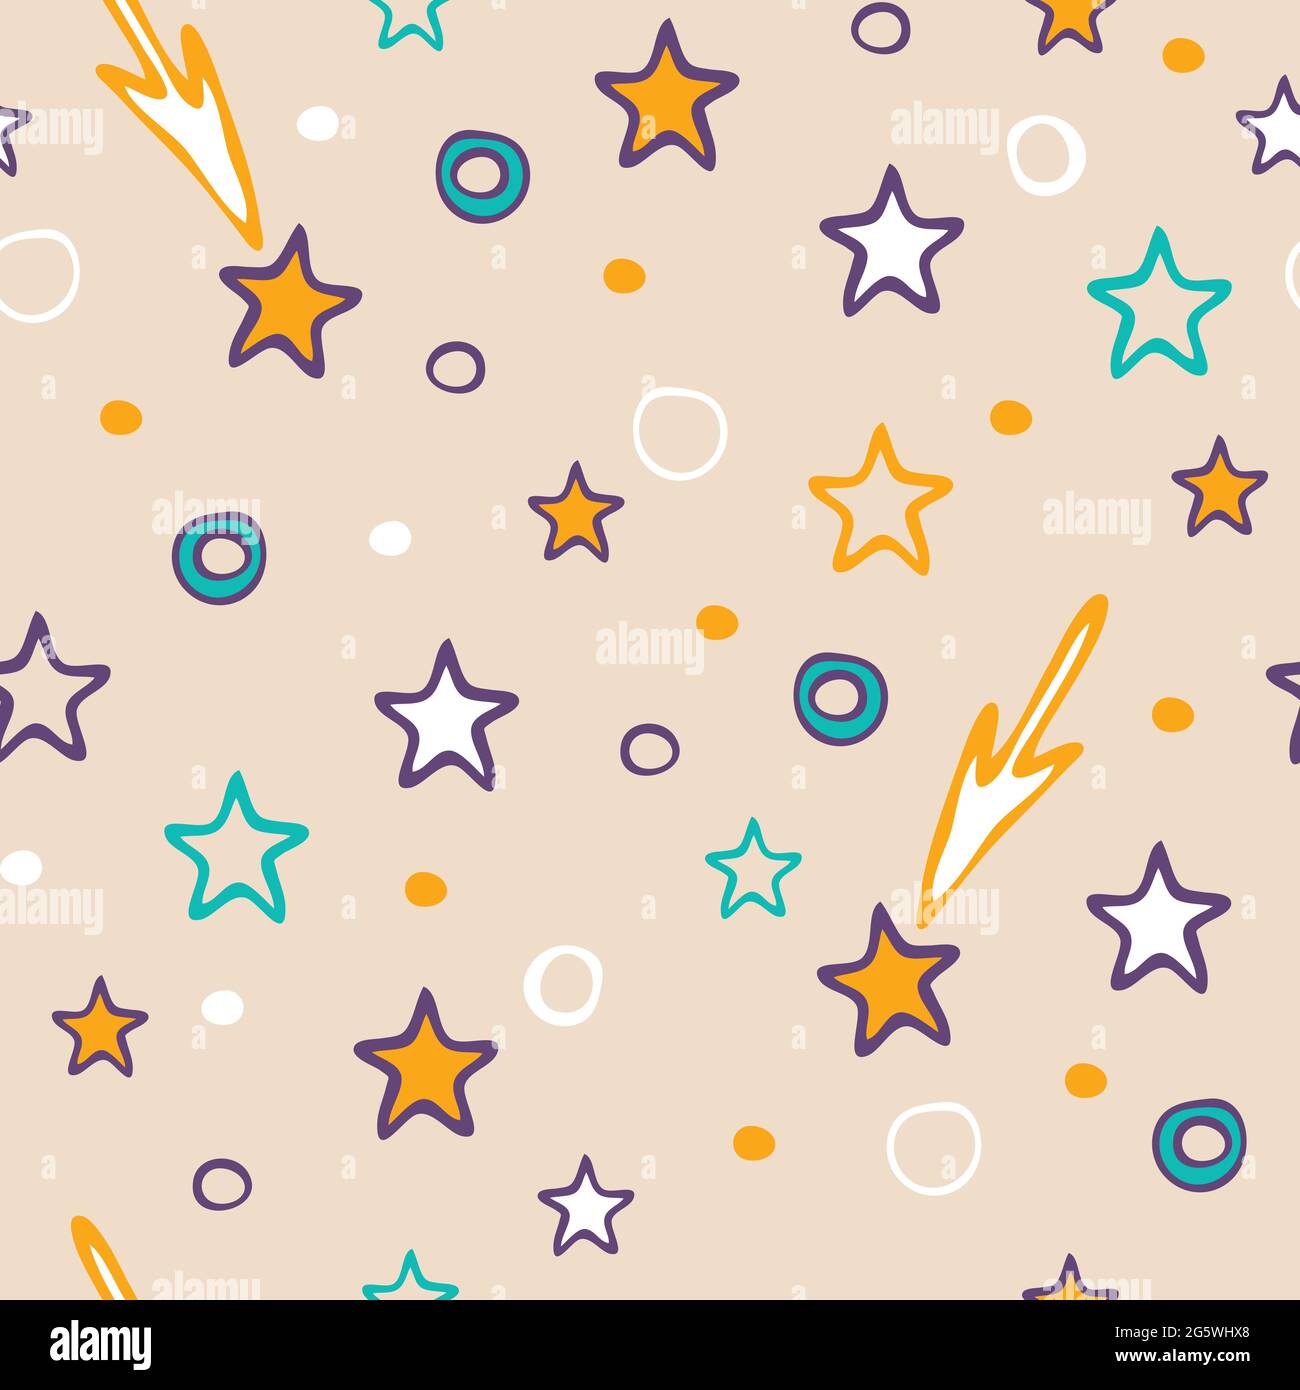 Pattern vettoriale senza cuciture con stelle carine su sfondo rosa chiaro.  Semplice wallpaper doccia bambino design. Felici i bambini moda tessile  Immagine e Vettoriale - Alamy